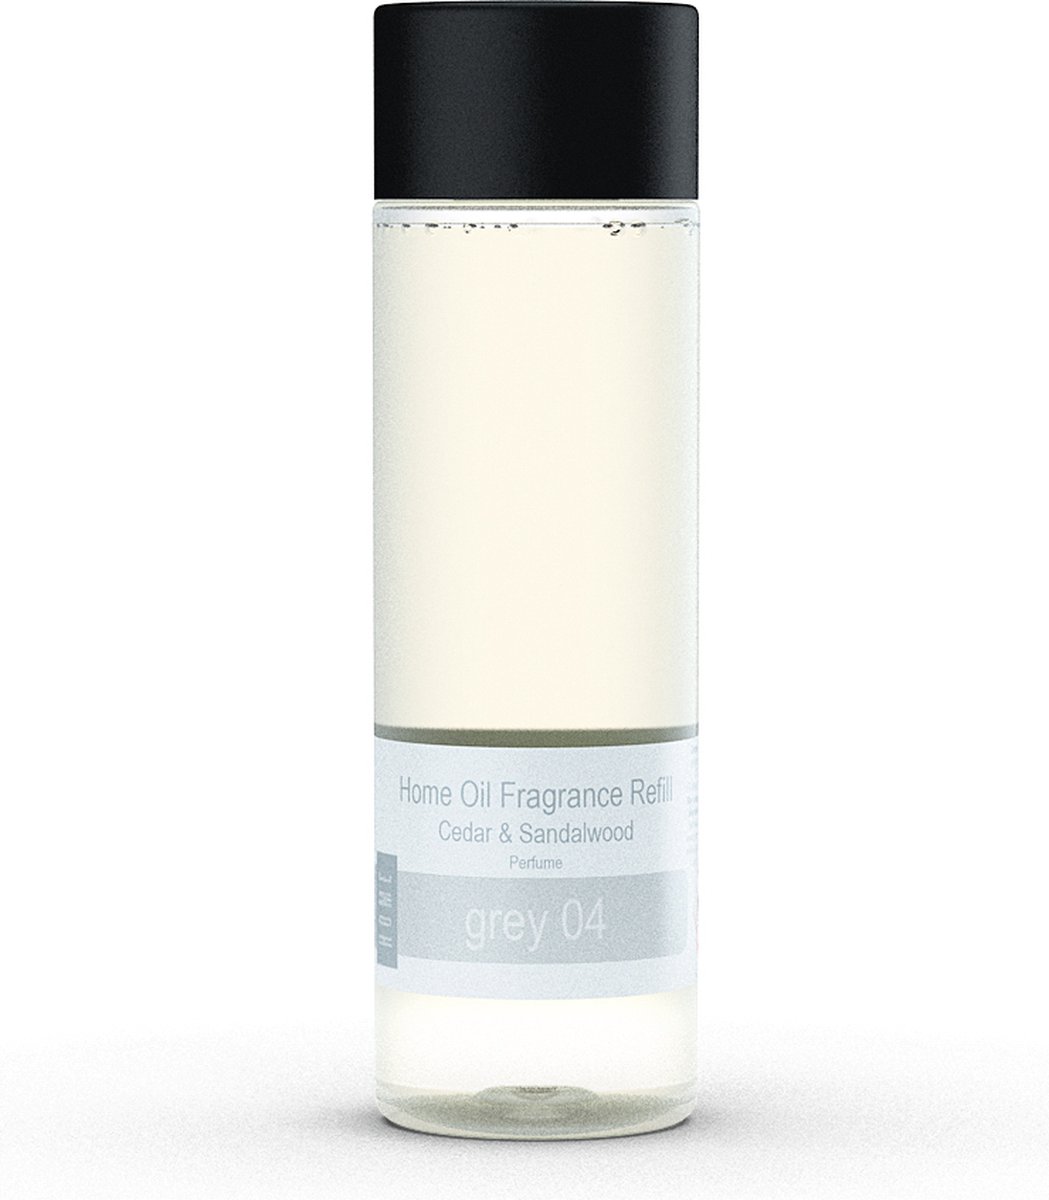 JANZEN Home Fragrance Refill Grey 04 - Janzen